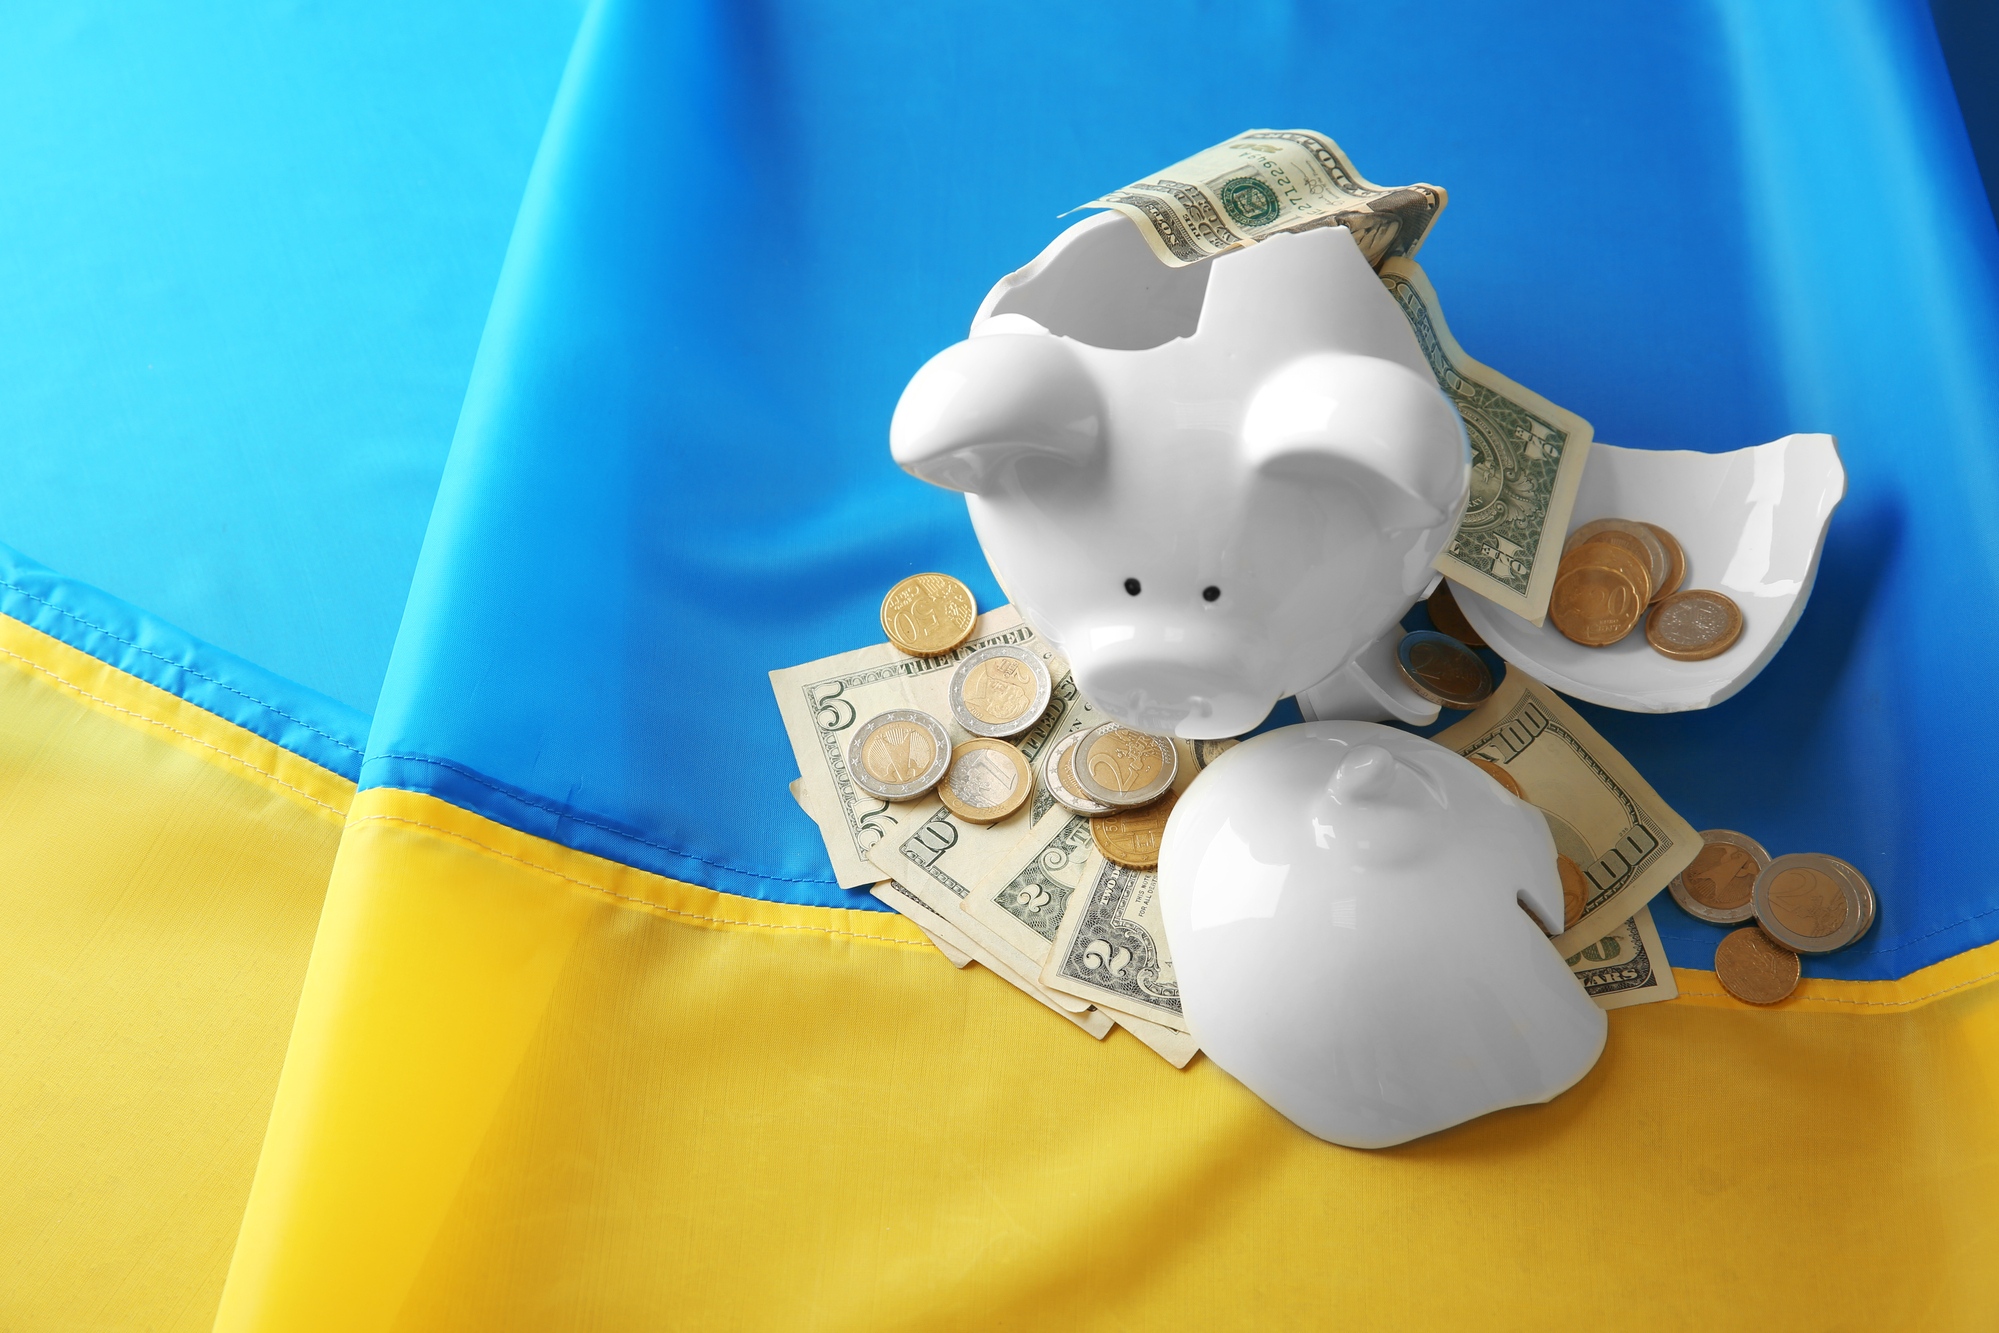 розбита скарбничка з доларами на фоні українського прапору